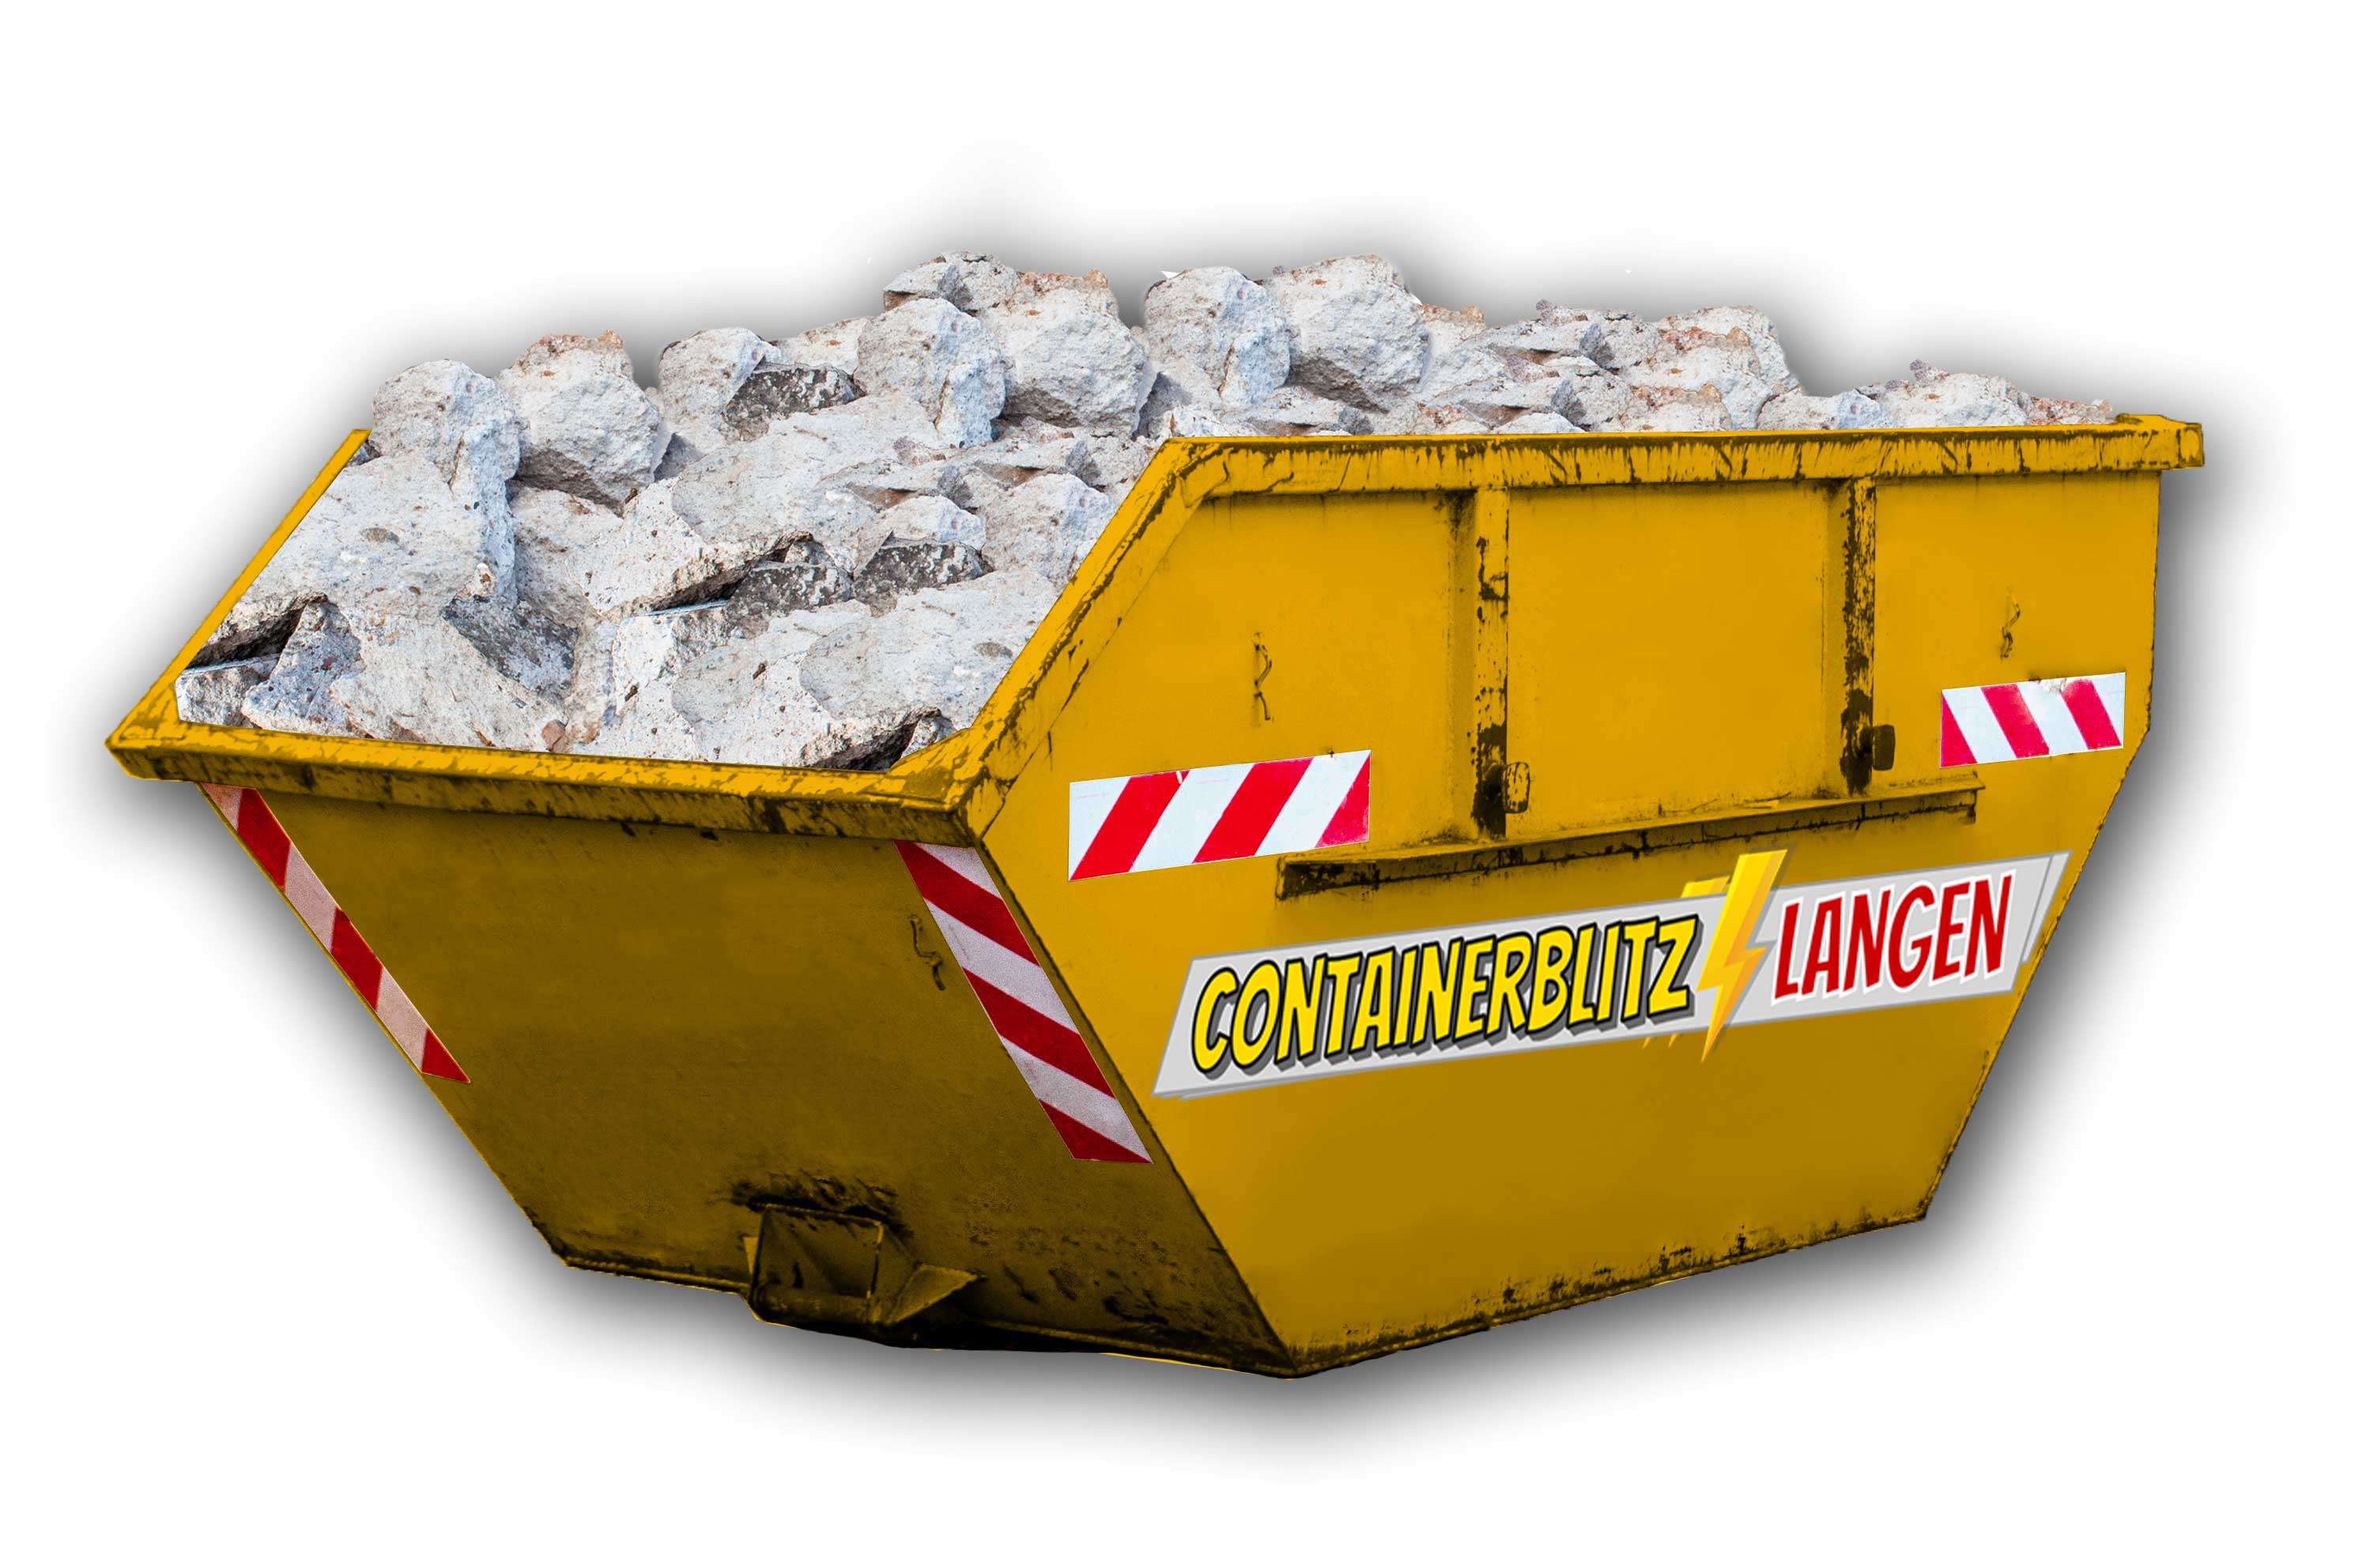 Leichtbaustoffe Container inkl. günstiger Entsorgung in Langen und Umgebung.